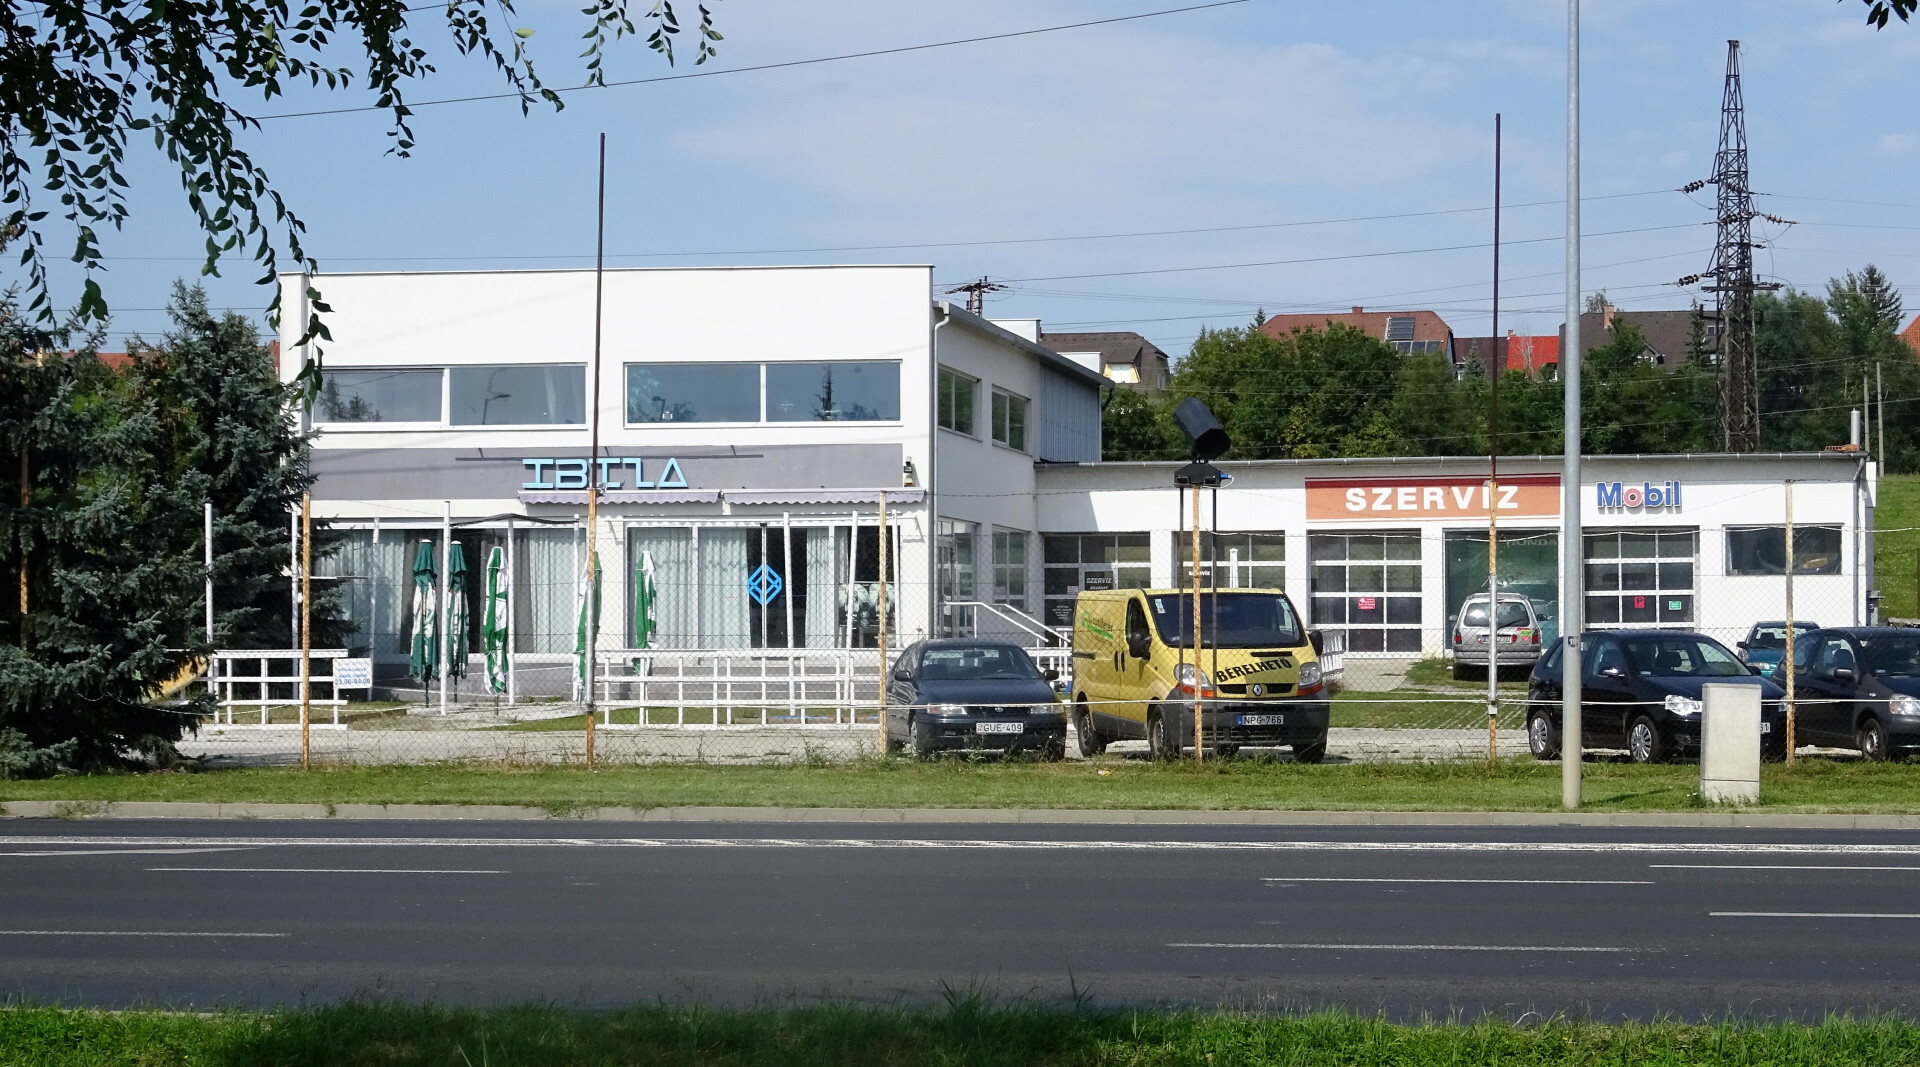 Váci u. közelében vendéglátóra is alkalmas nagy üvegportálos üzlet